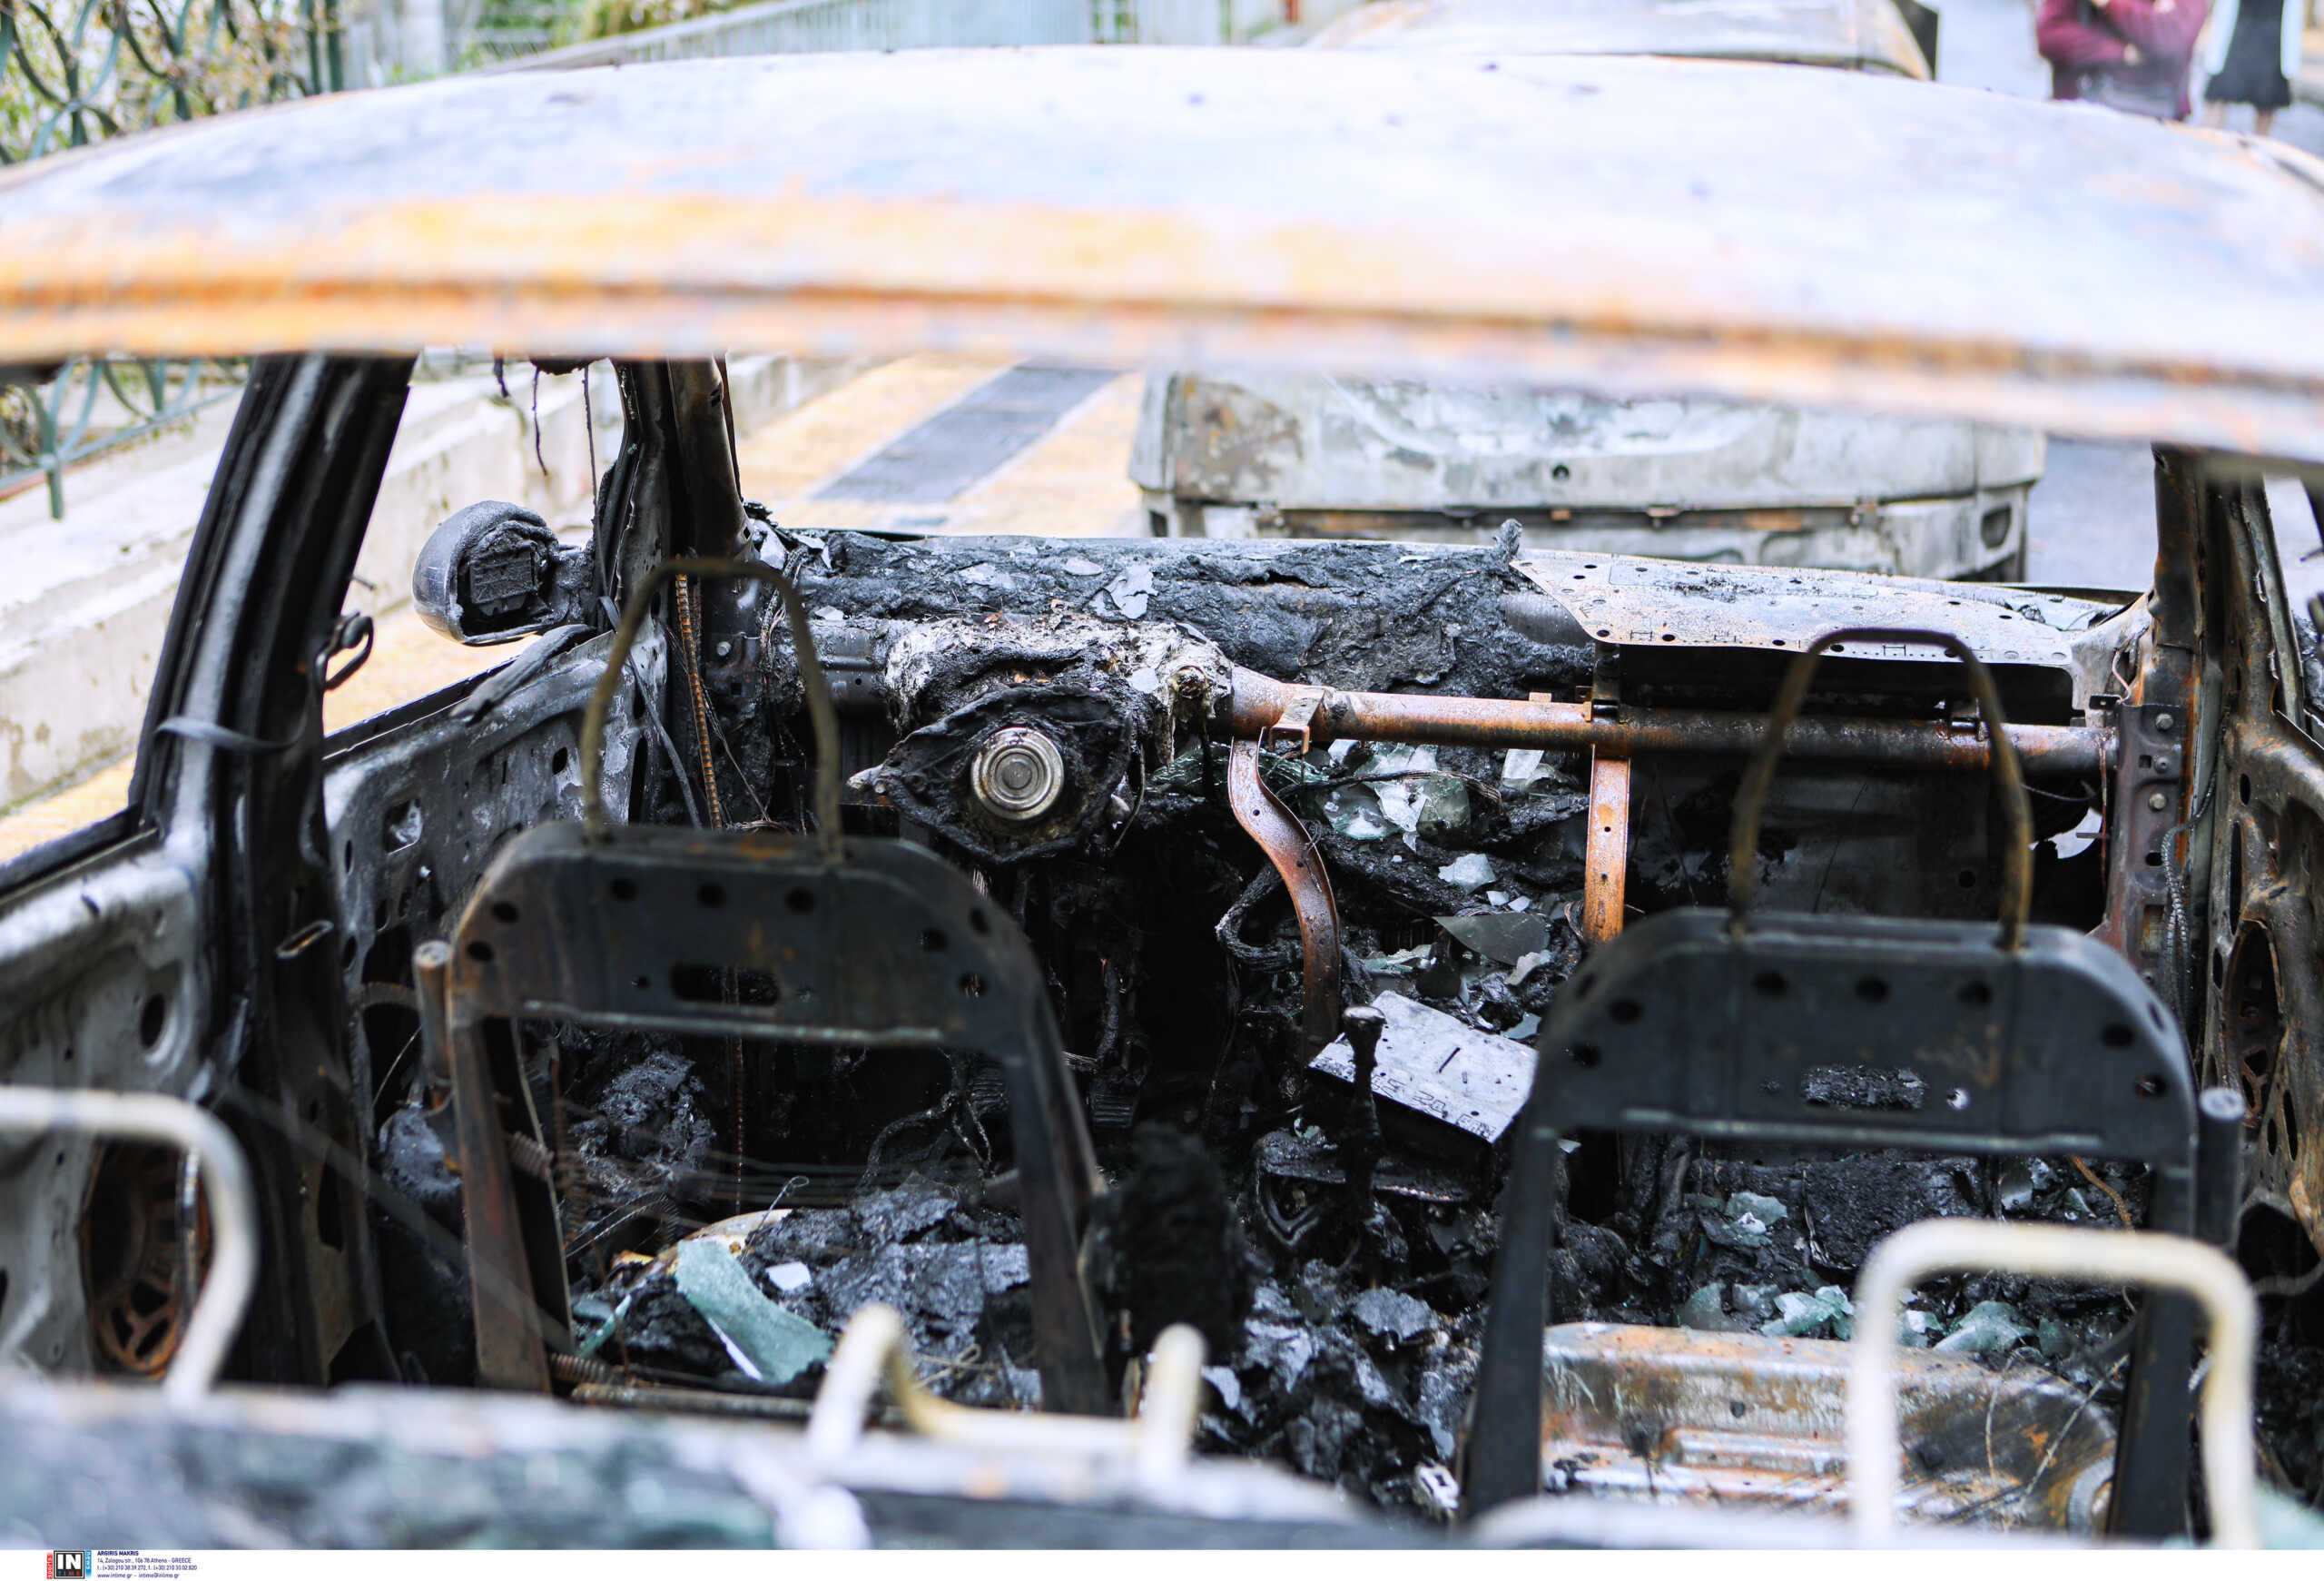 Έδεσσα: Μεγάλη φωτιά σε συνεργείο αυτοκινήτων – Κάηκαν ΙΧ και μηχανές – Ο καπνός σκέπασε την πόλη